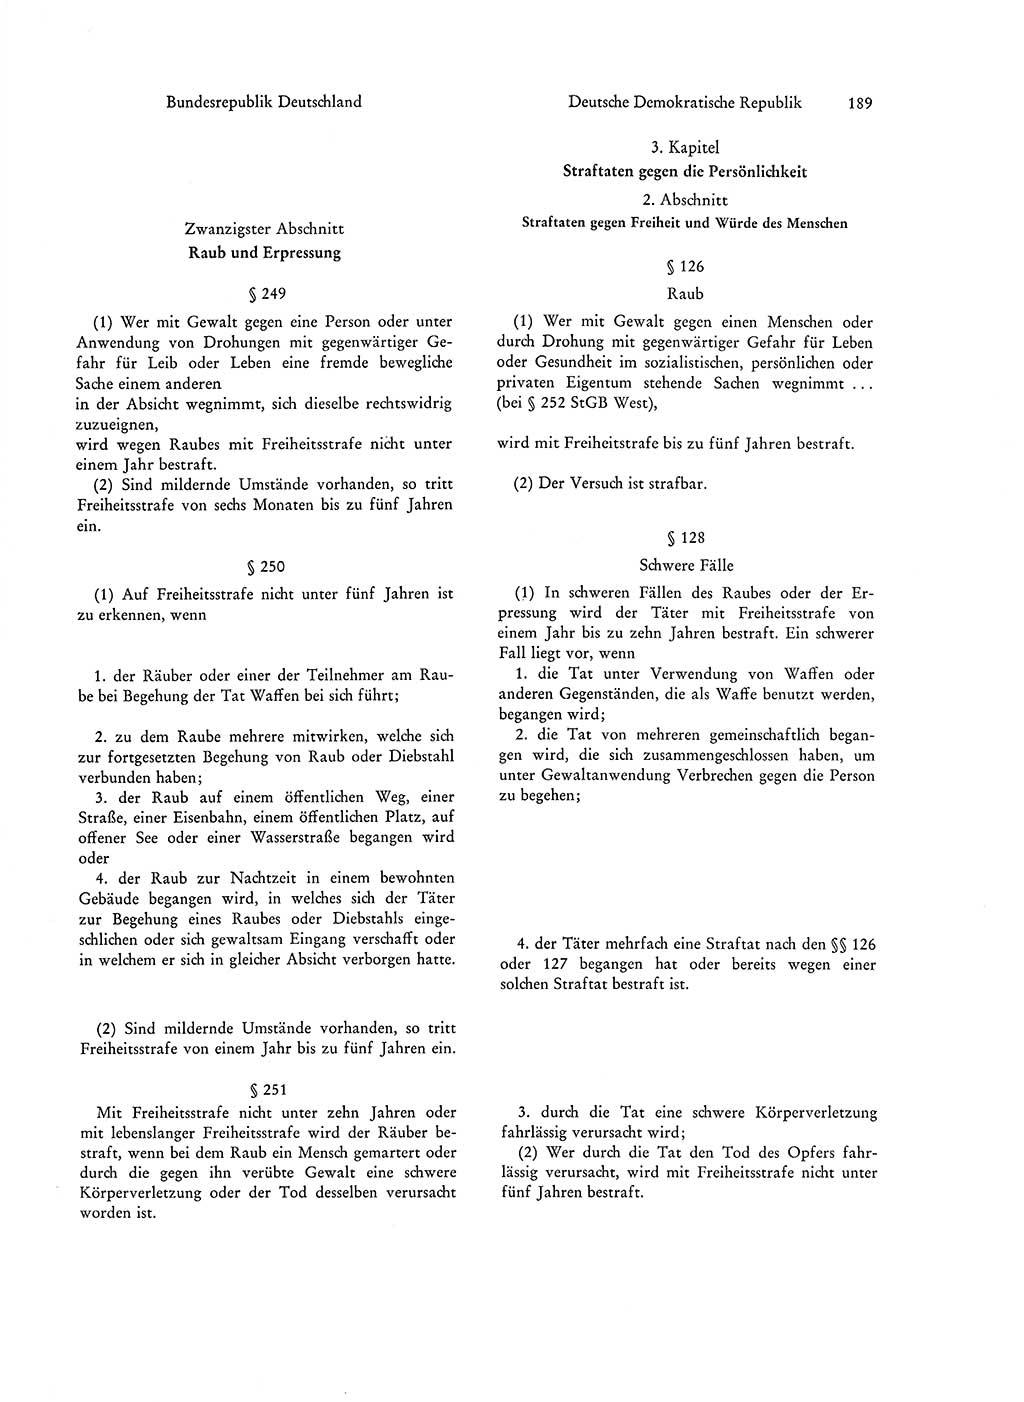 Strafgesetzgebung in Deutschland [Bundesrepublik Deutschland (BRD) und Deutsche Demokratische Republik (DDR)] 1972, Seite 189 (Str.-Ges. Dtl. StGB BRD DDR 1972, S. 189)